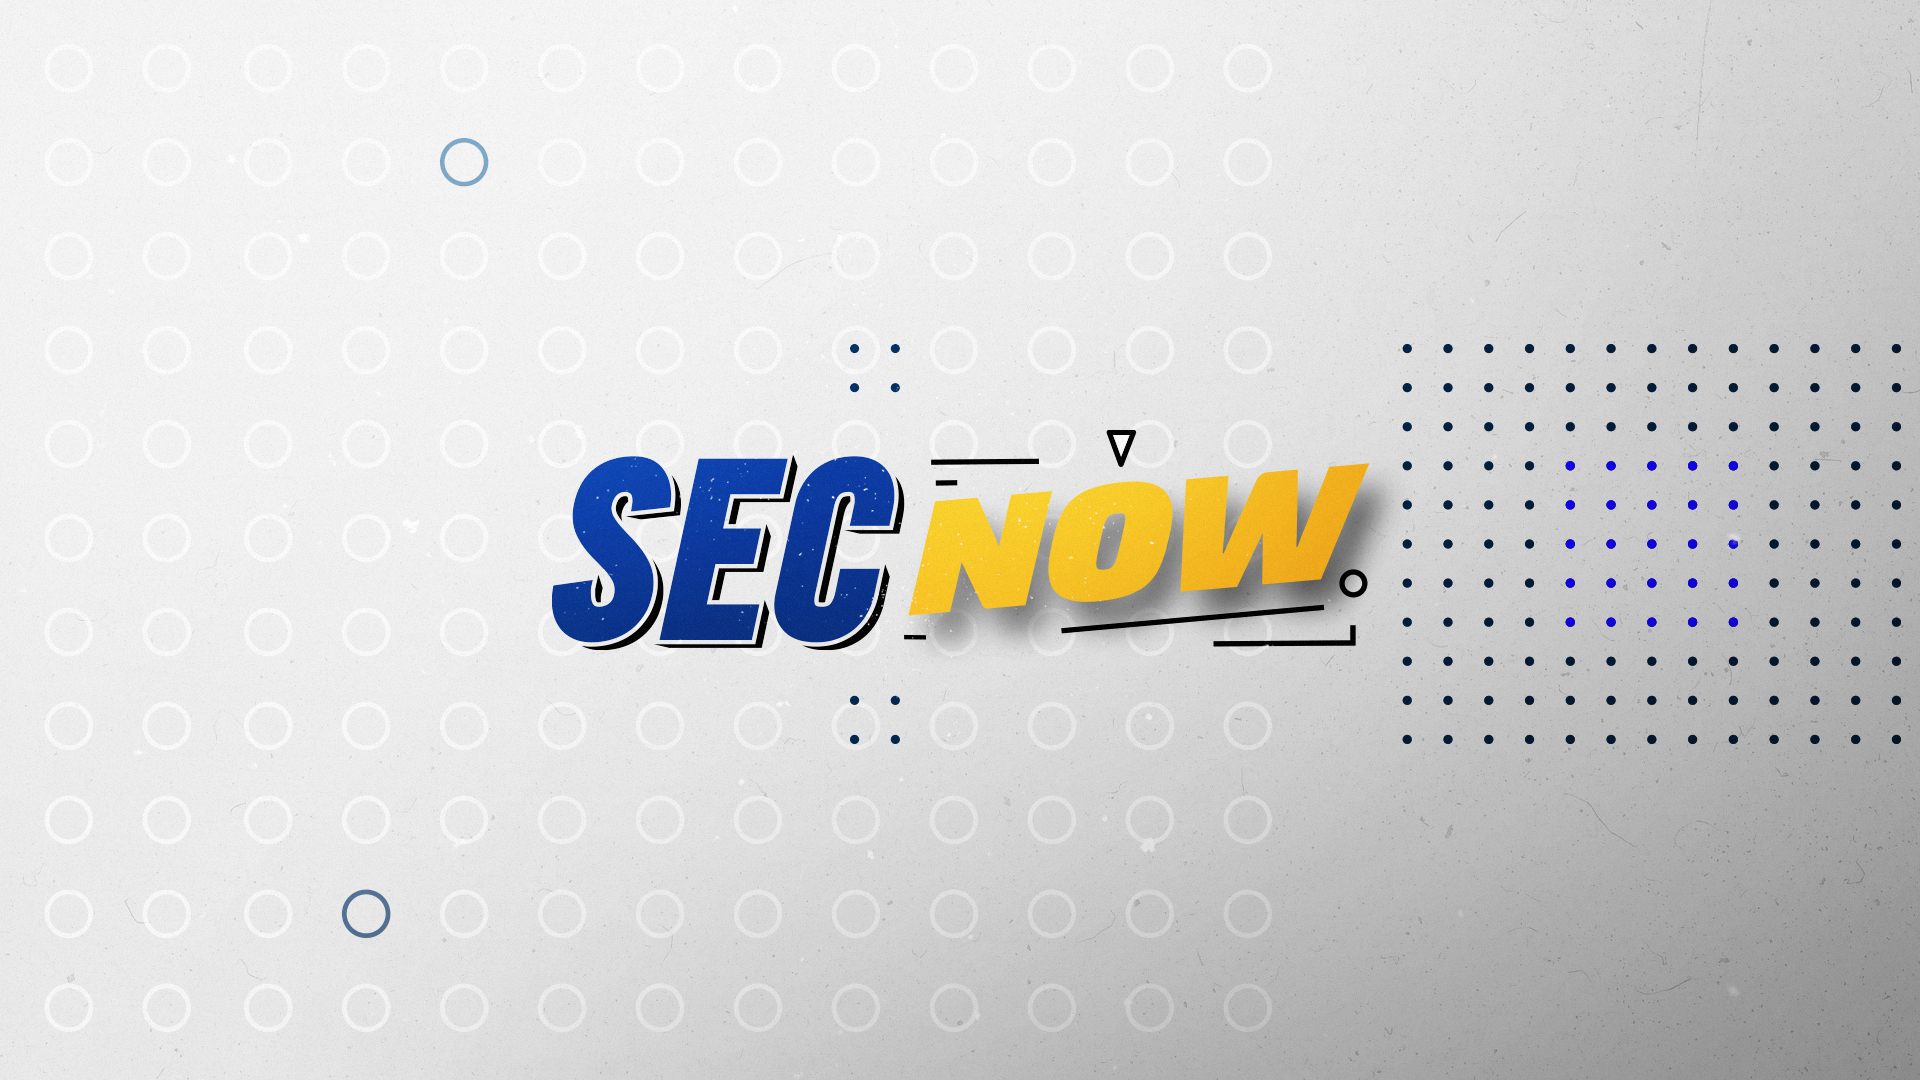 ESPN: 2018 SEC Network Rebrand